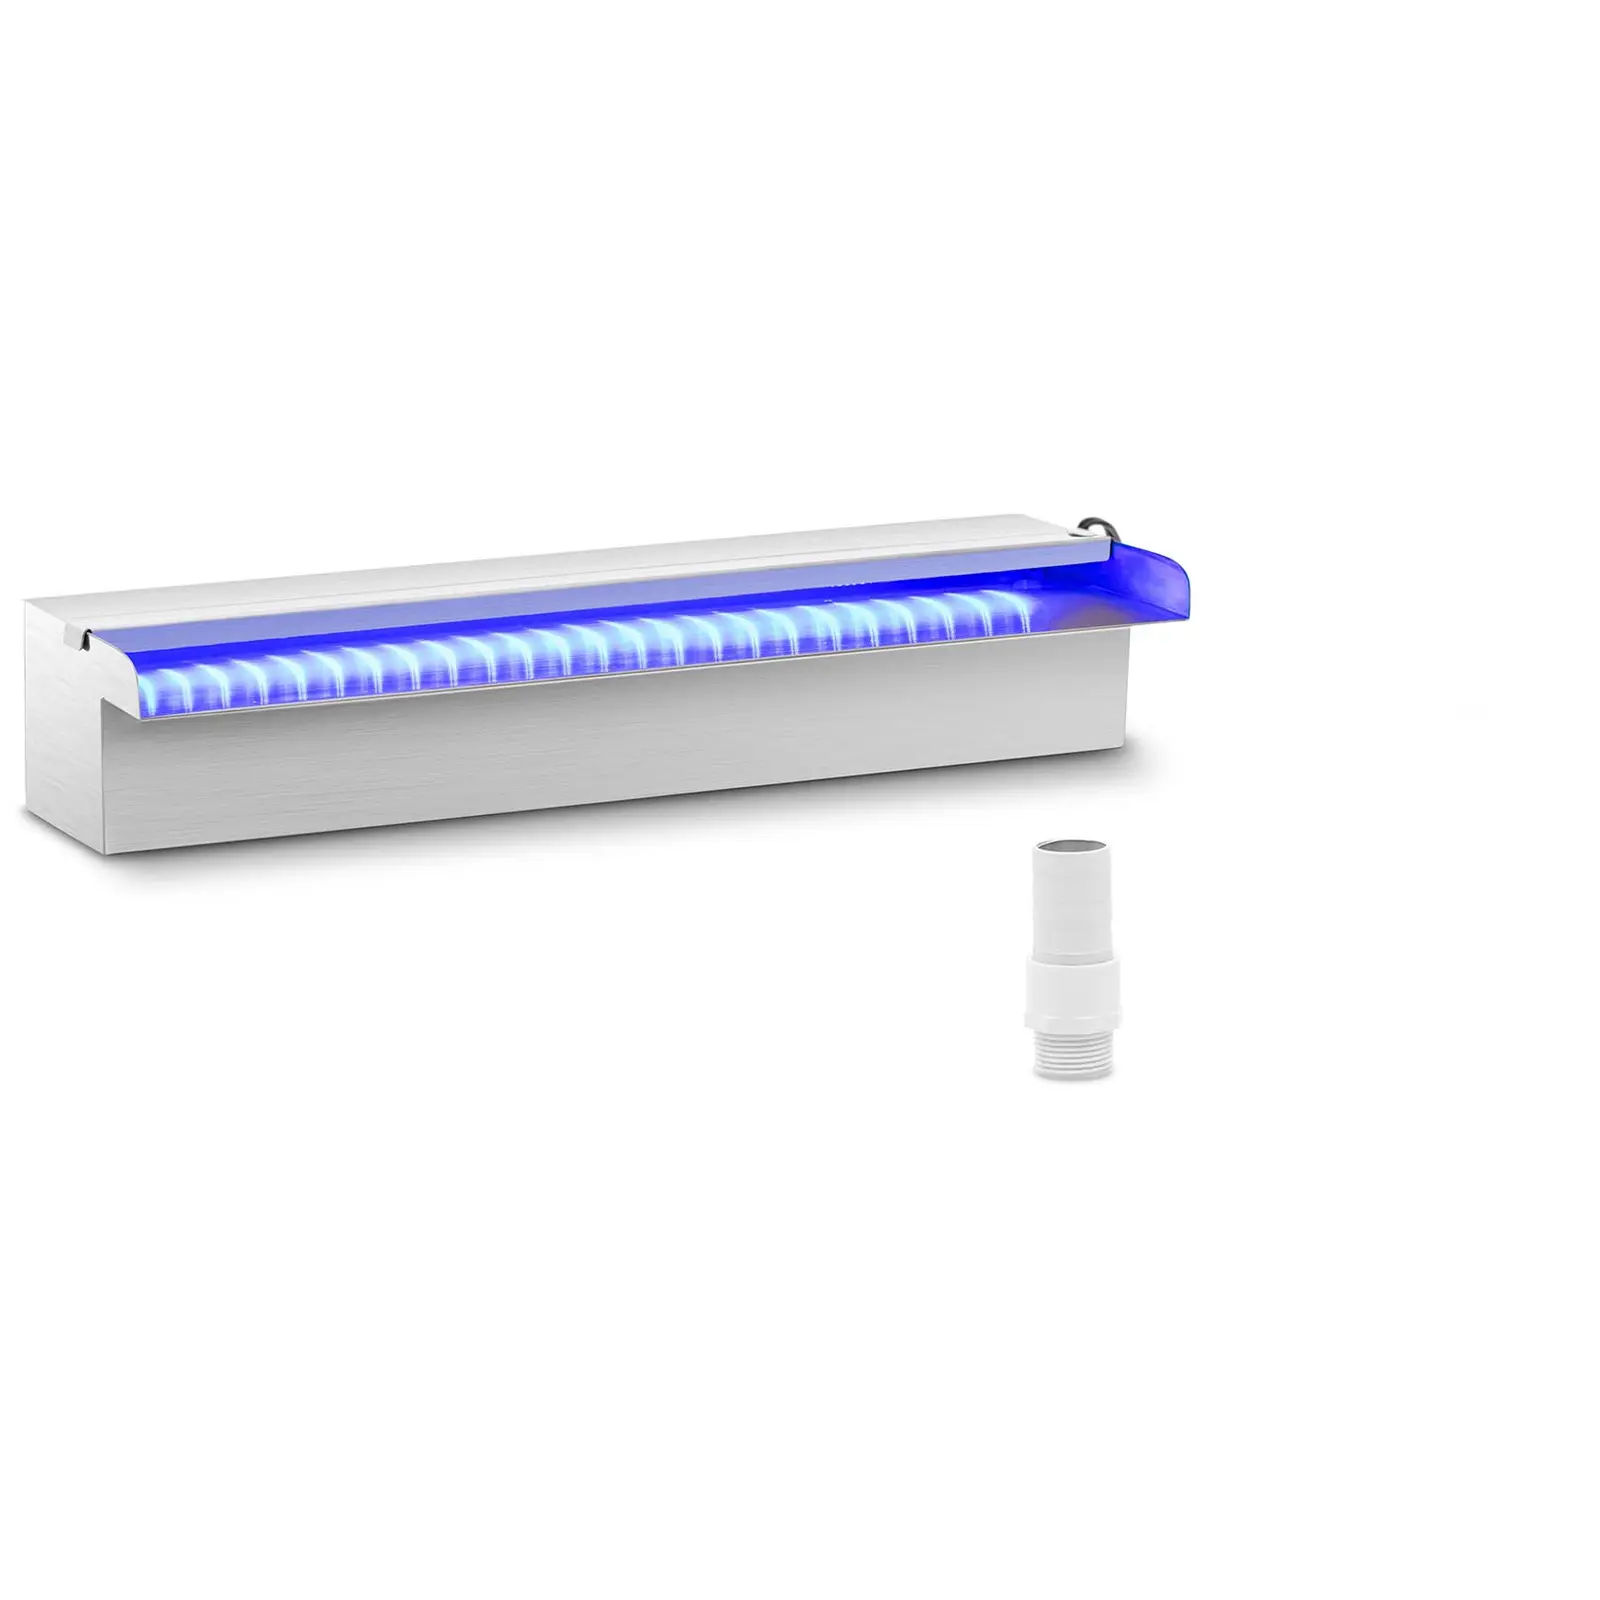 Duș de supratensiune - 45 cm - Iluminare cu LED-uri - Albastru / Albastru